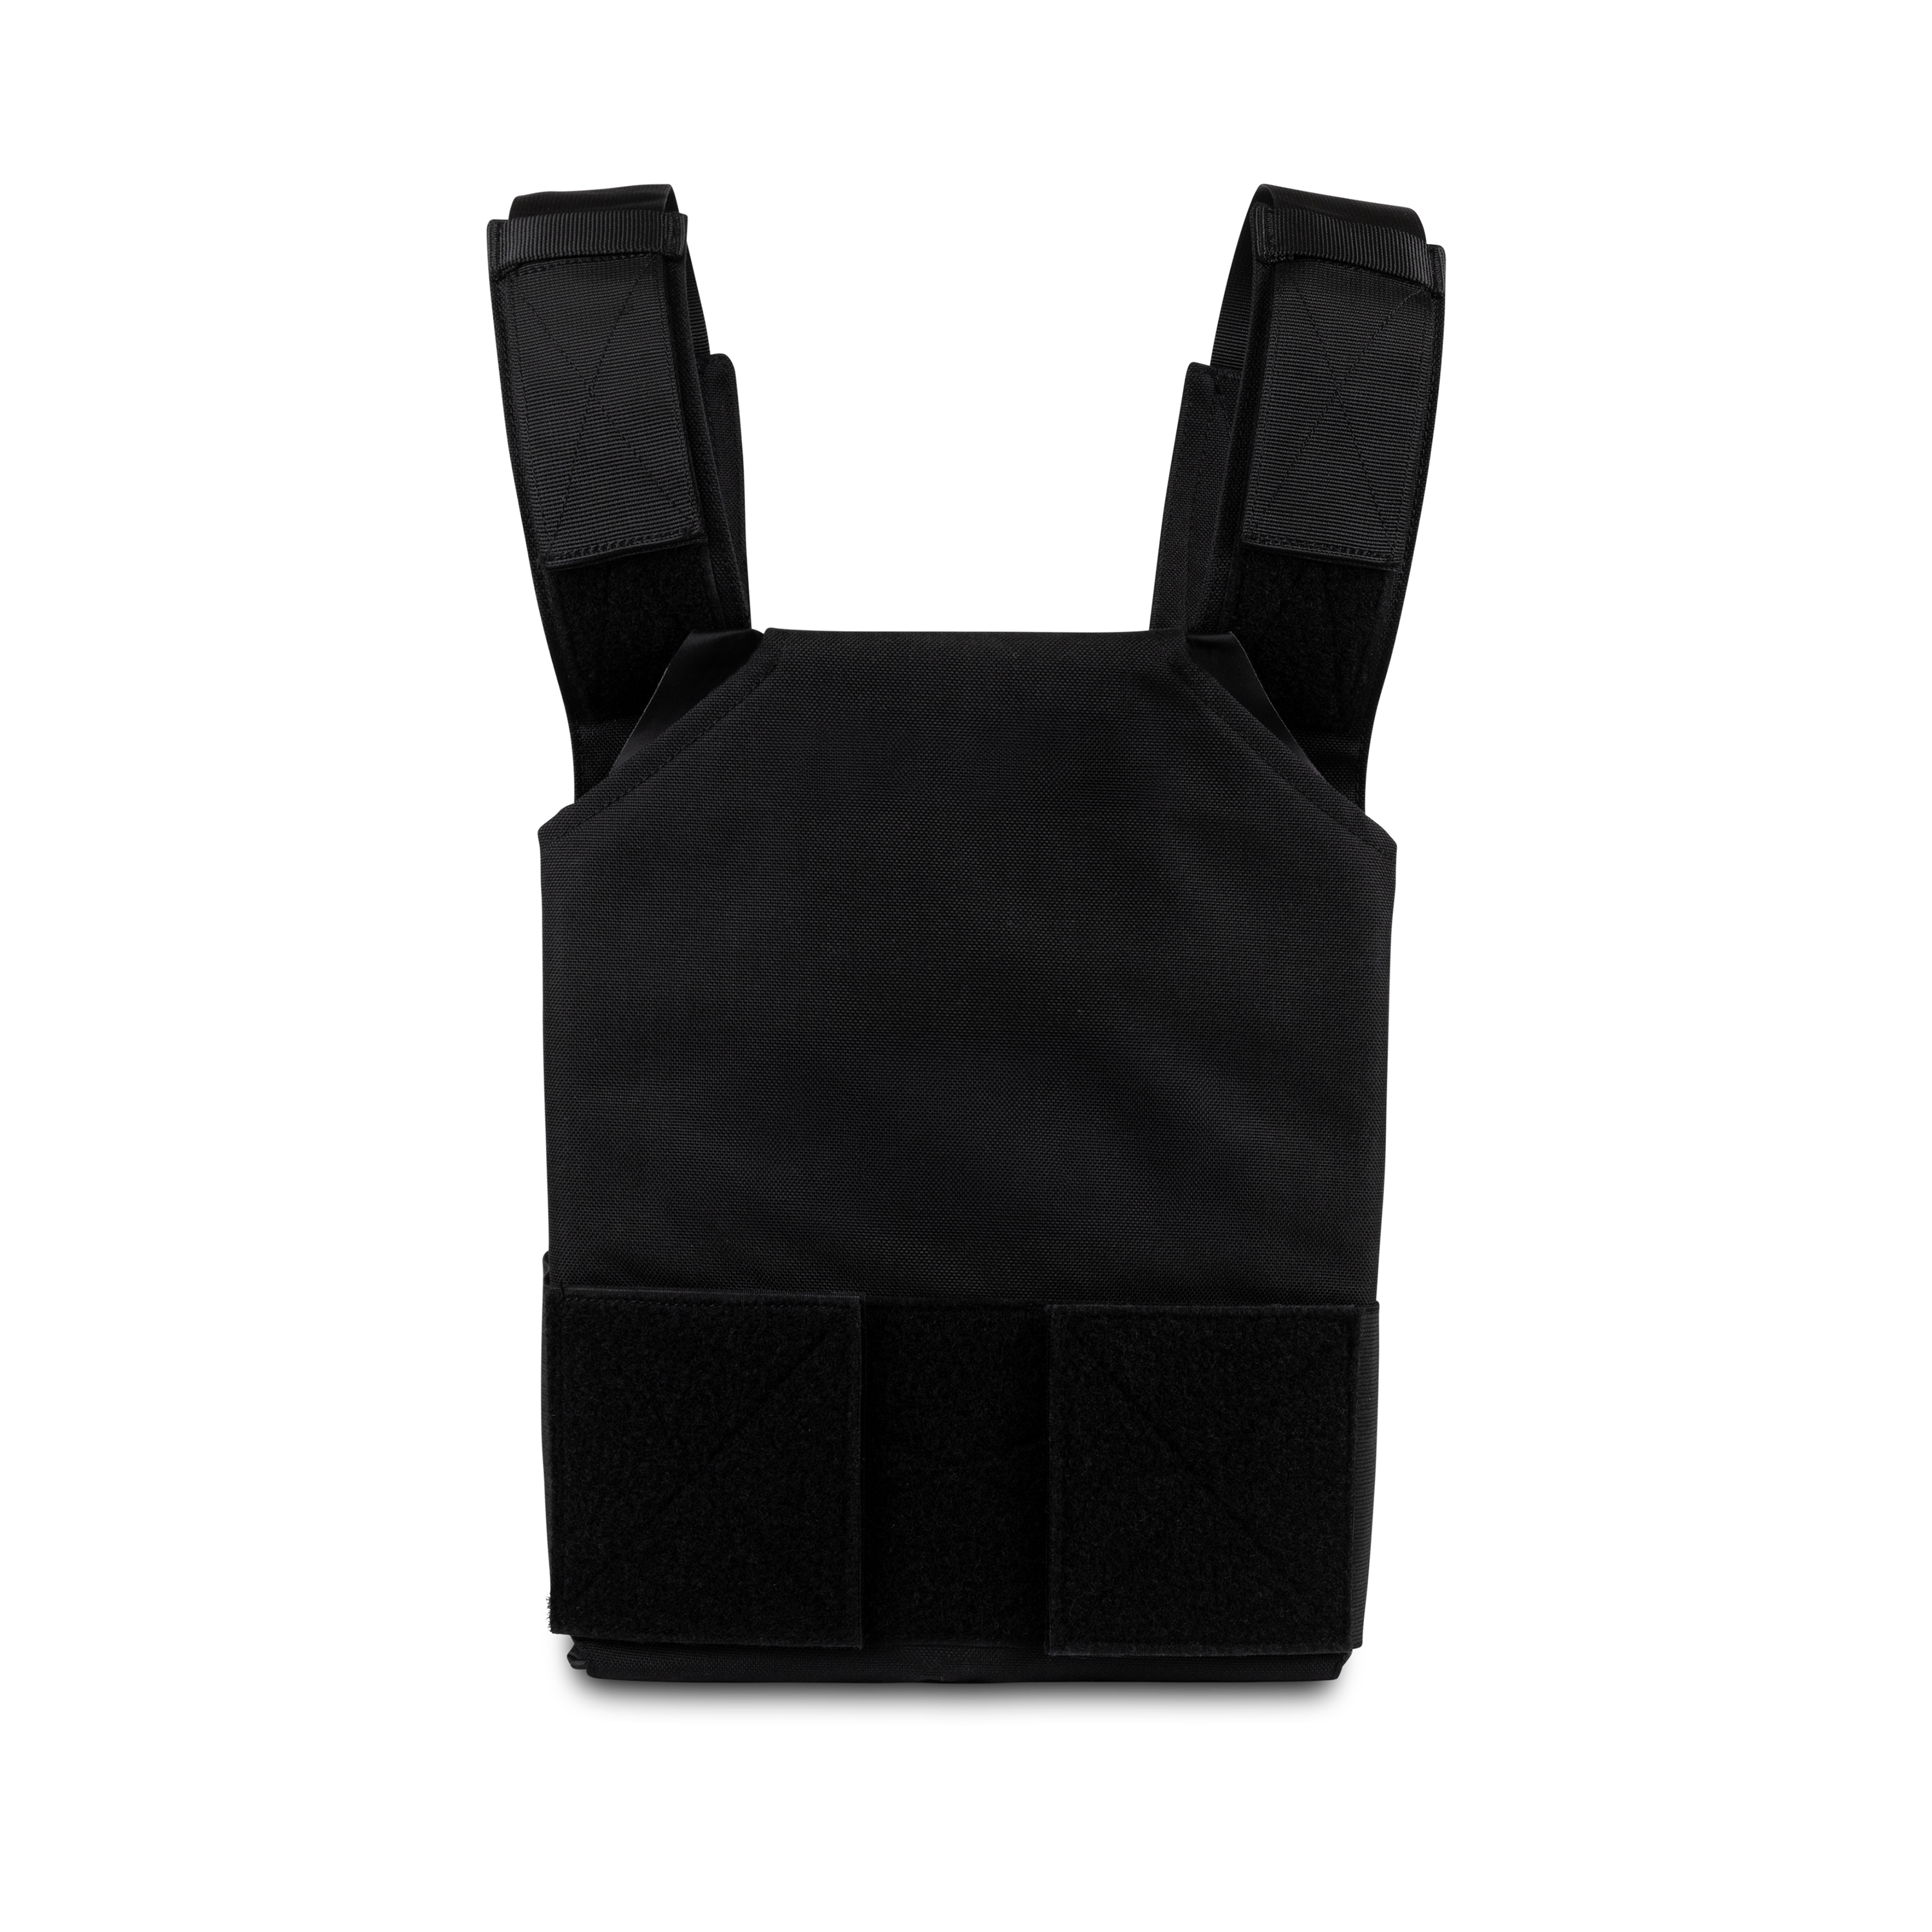 ProtectVest® Covert - Children's Emergency Bulletproof Vest / Body Armor for Kids